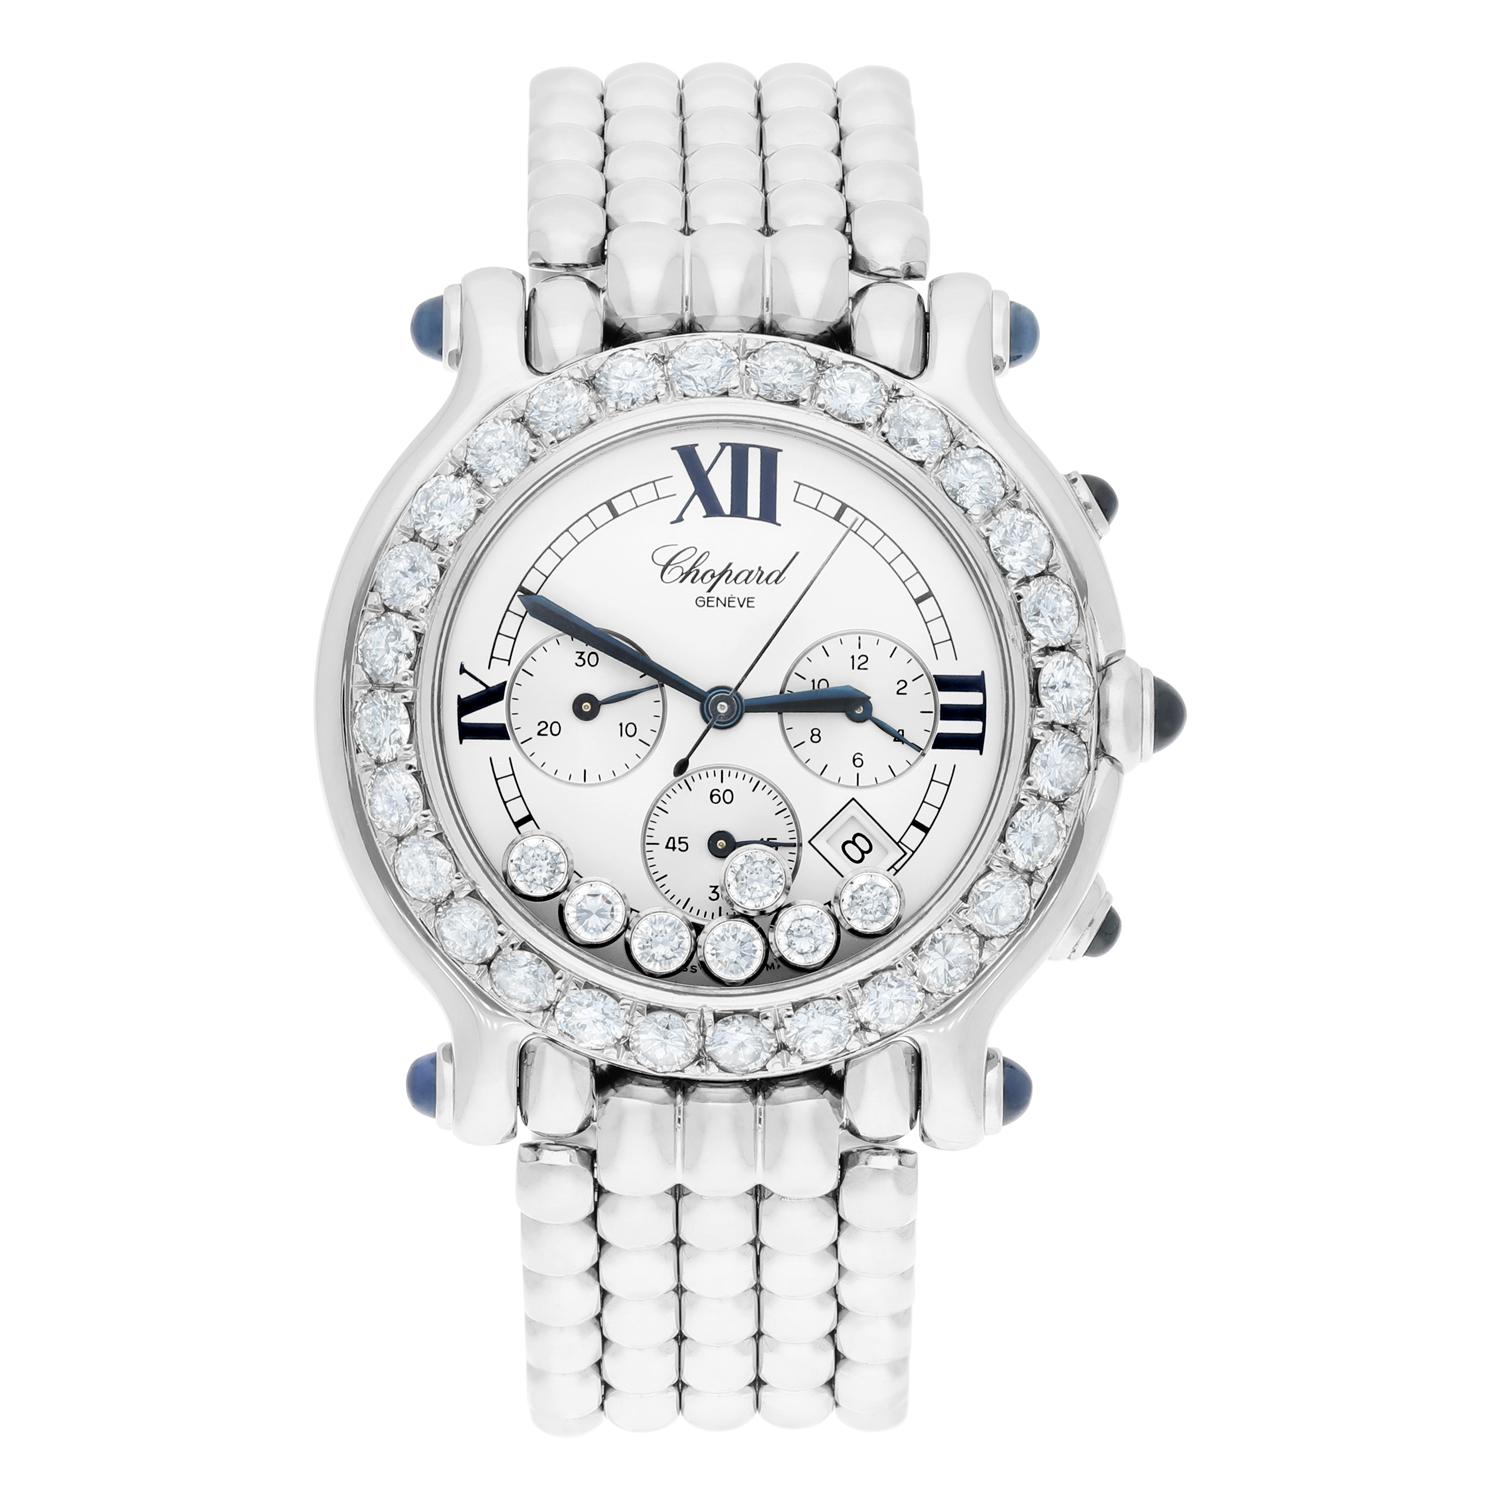 Cette montre-bracelet chronographe Chopard Happy Sport est l'accessoire de luxe idéal pour les femmes. Elle présente un superbe cadran rond blanc avec chiffres romains, 7 diamants flottants d'usine à l'intérieur et une lunette en diamants sertis sur